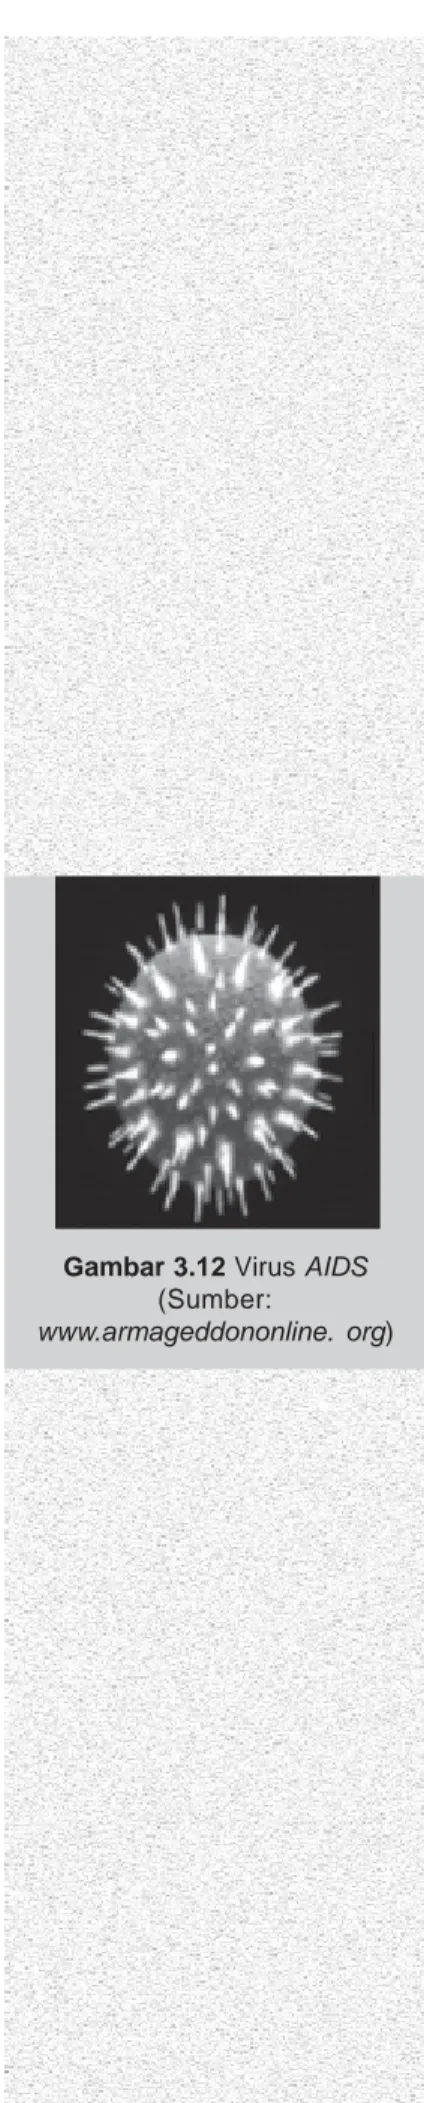 Gambar 3.12 Virus AIDS (Sumber: